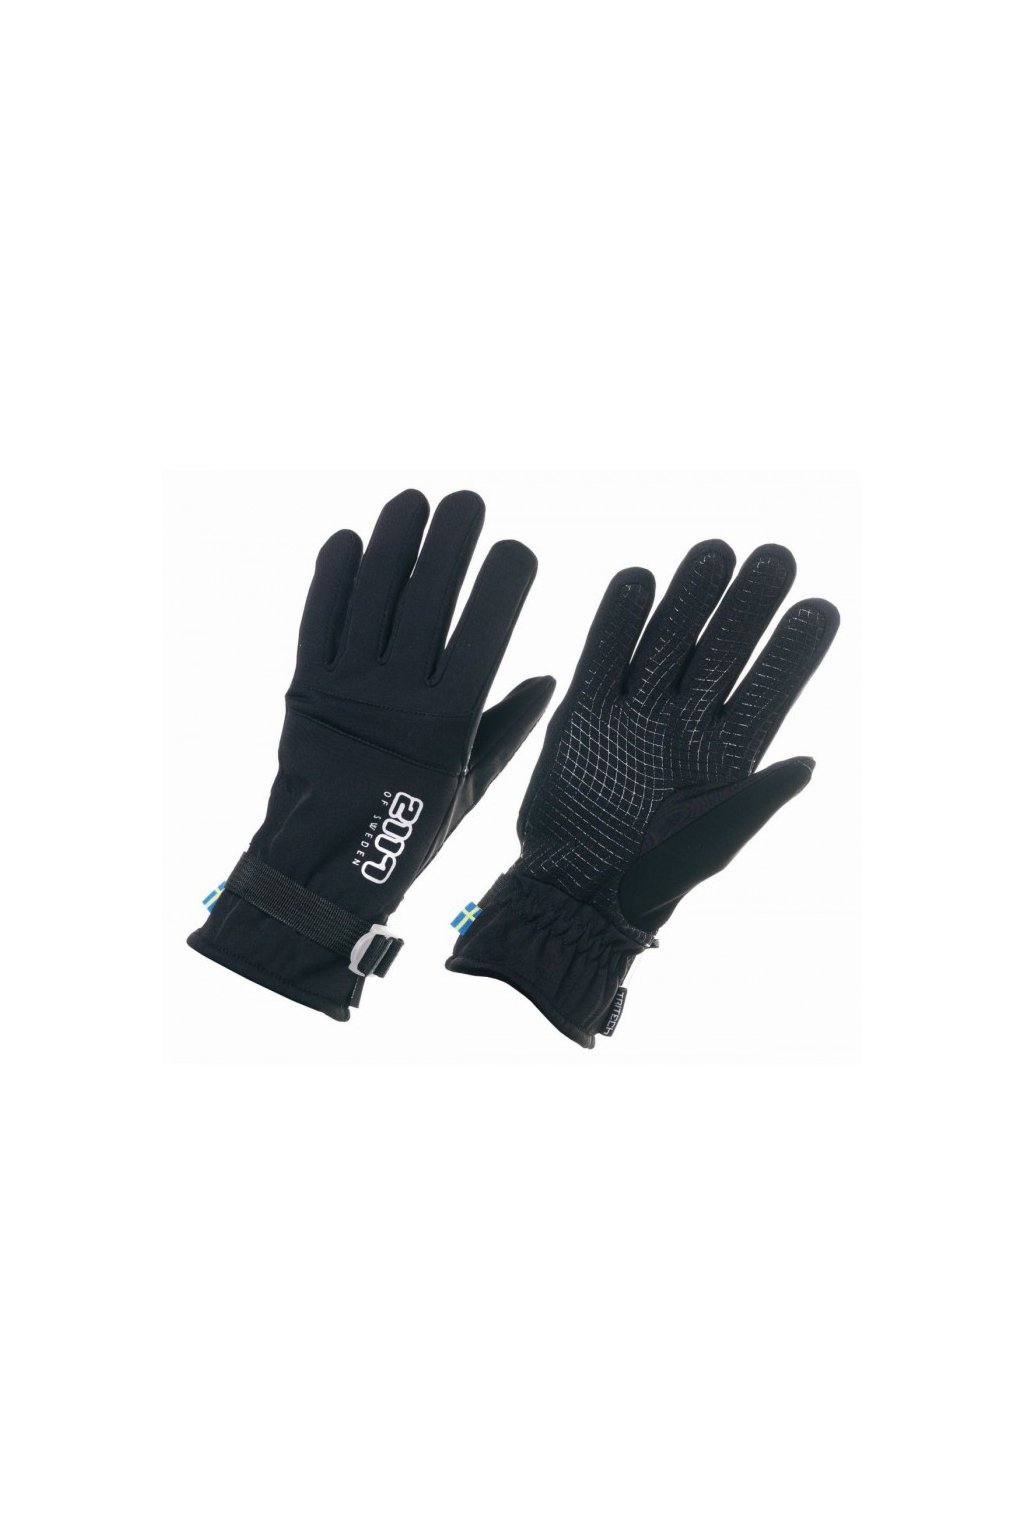 2117 OF SWEDEN - lyžiarske rukavice Hammra black (Velikost 6-8)